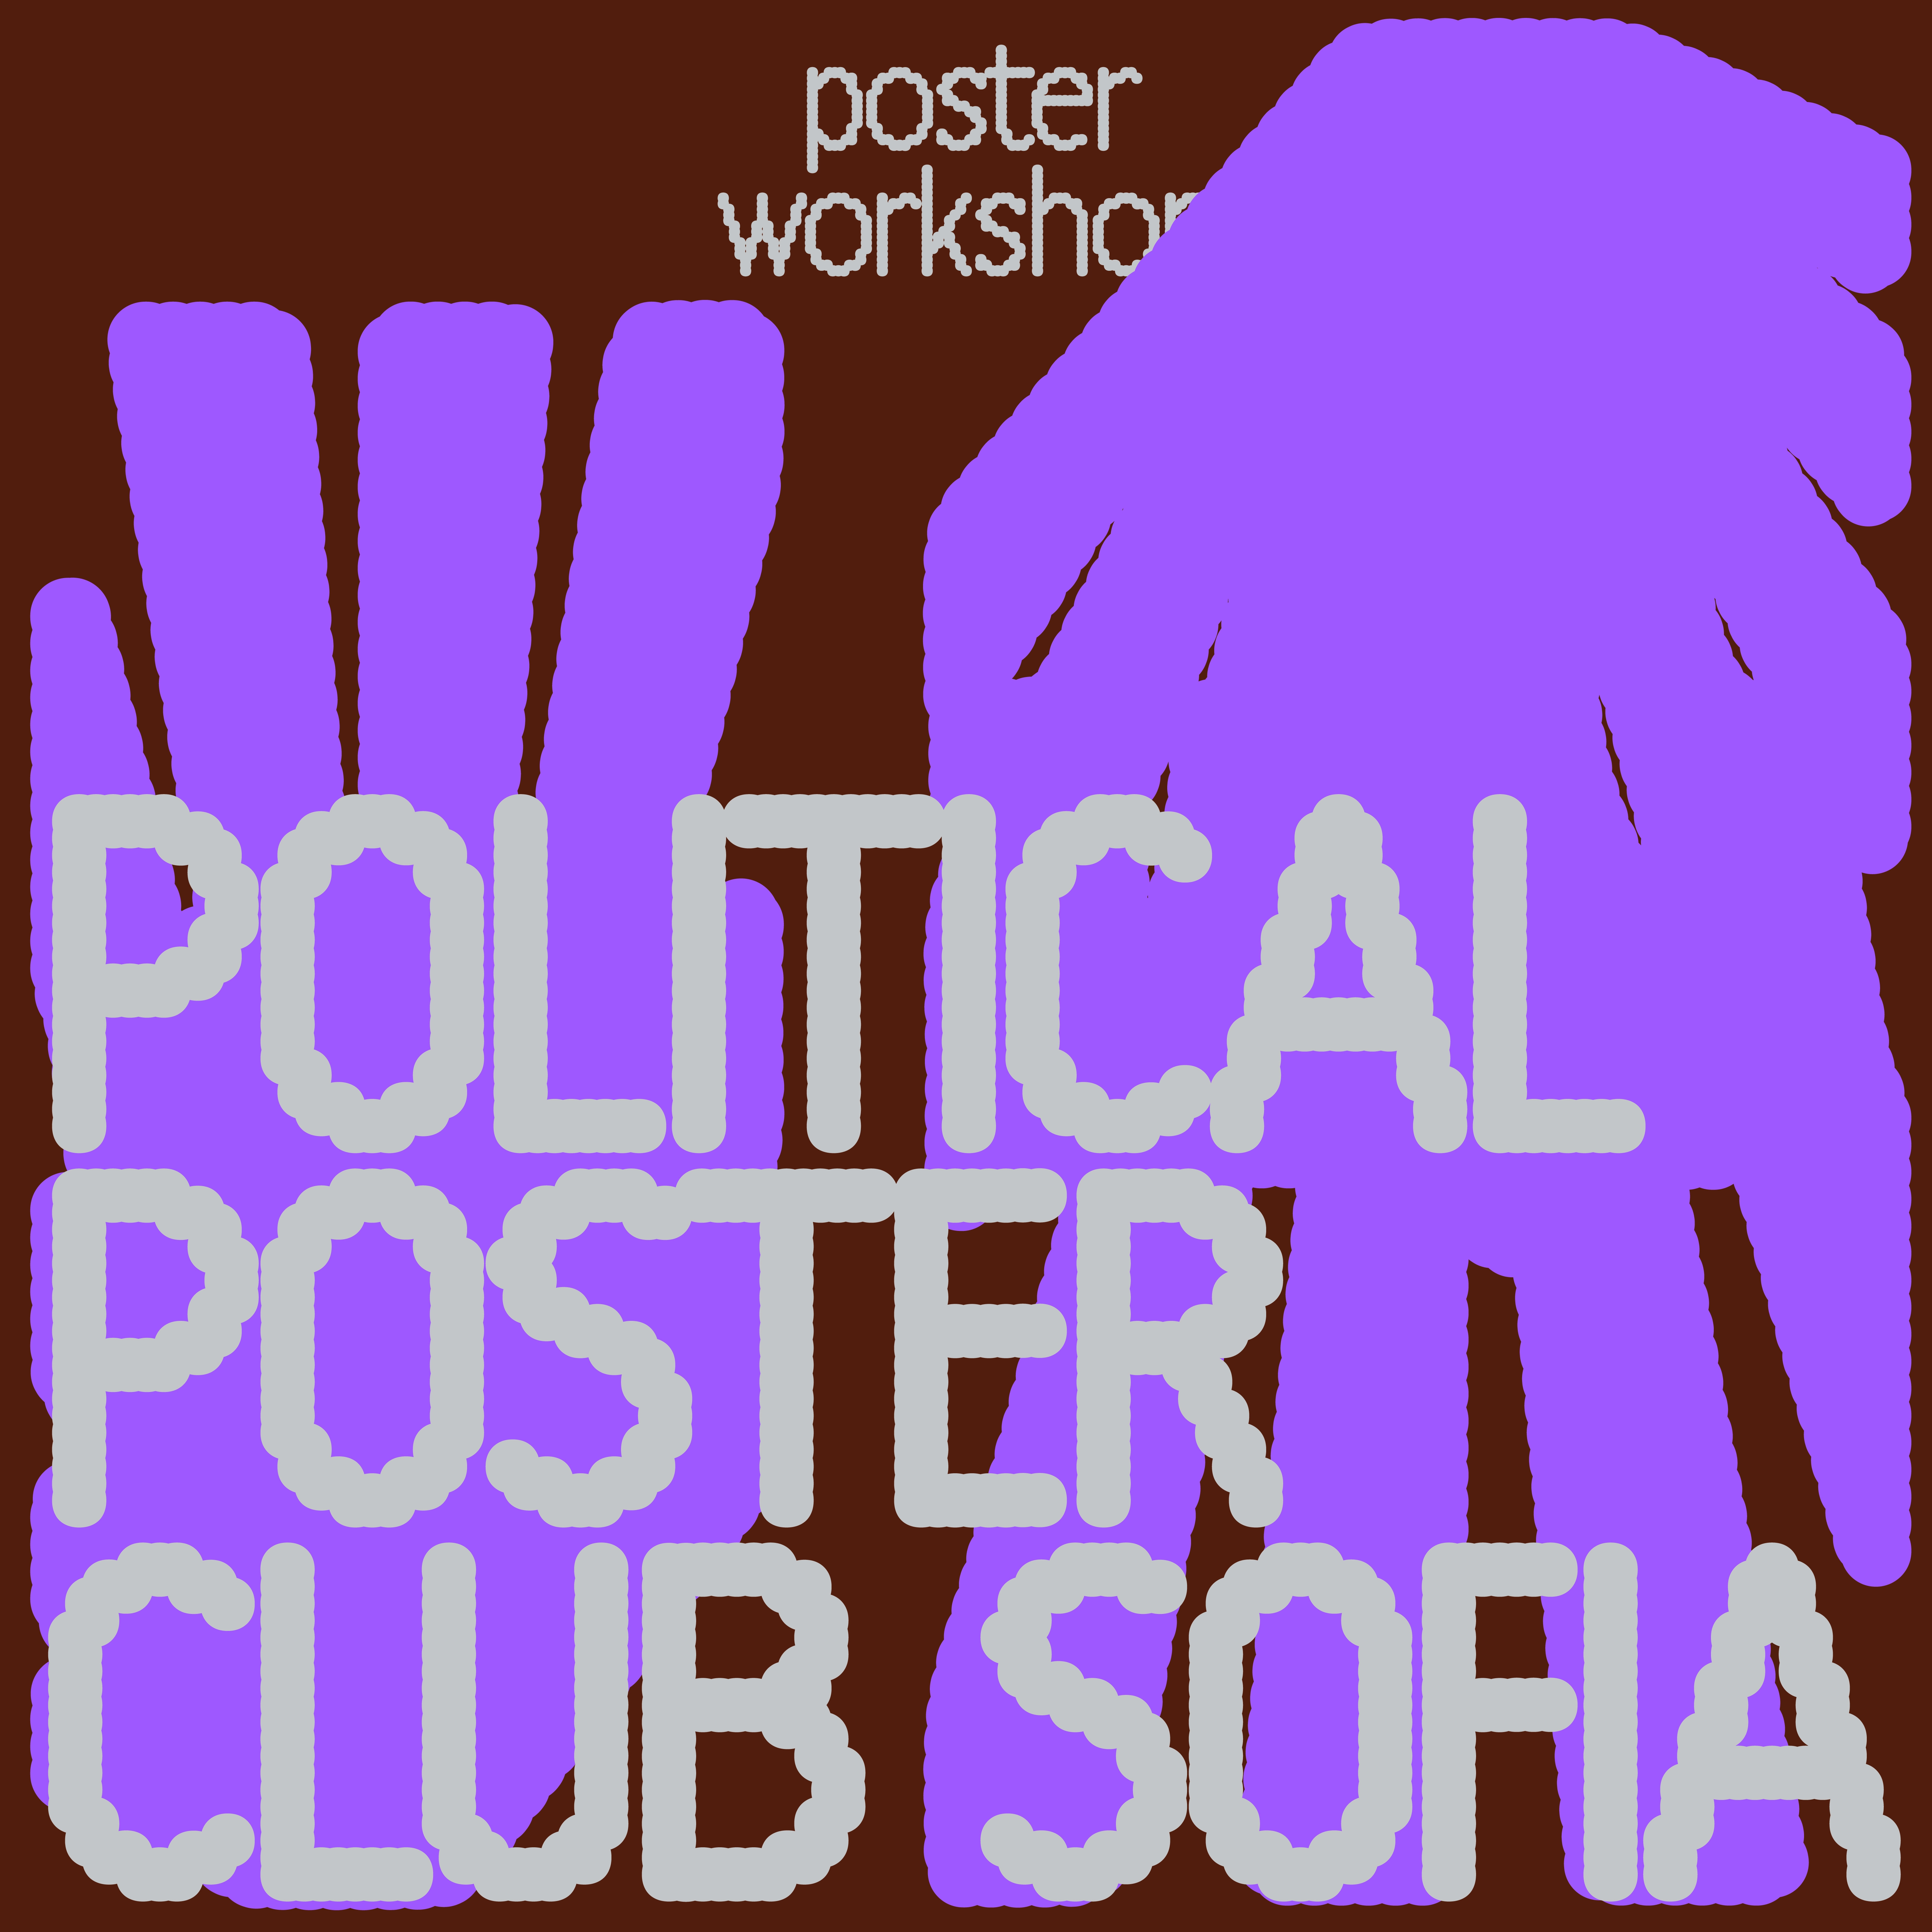 poster-workshop